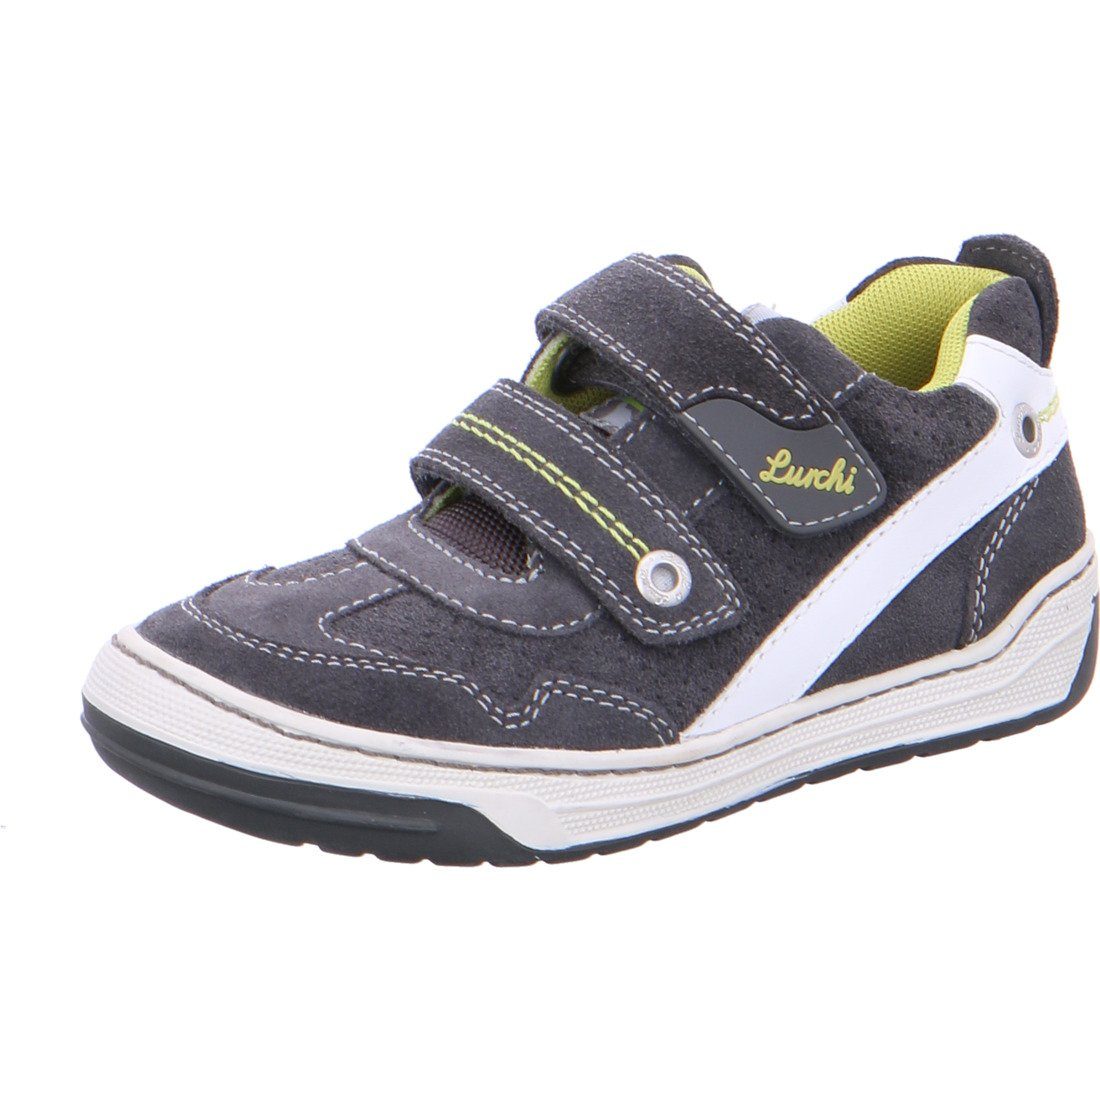 Lurchi - Schuhe, Sneaker Jungen 036954 Bruce grau Sneaker Rauleder Lurchi